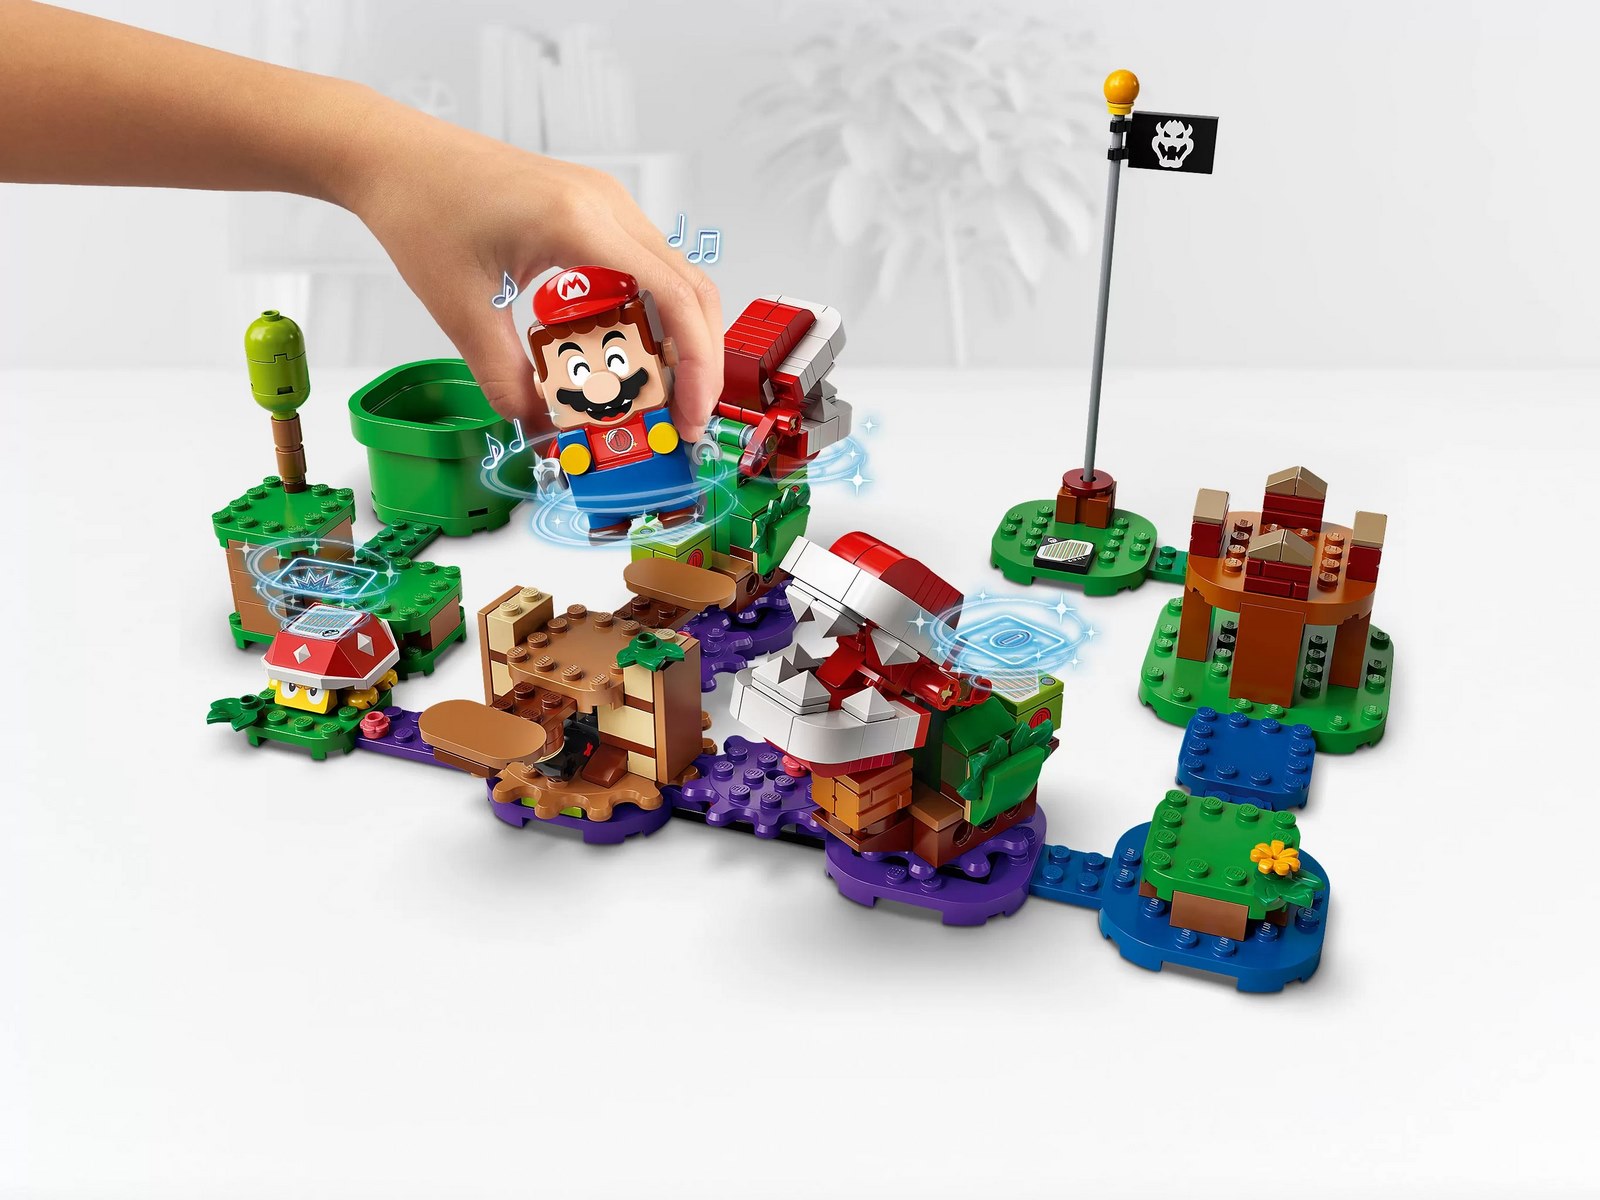 Конструктор LEGO Super Mario «Загадочное испытание растения-пираньи» Дополнительный набор 71382 / 267 деталей